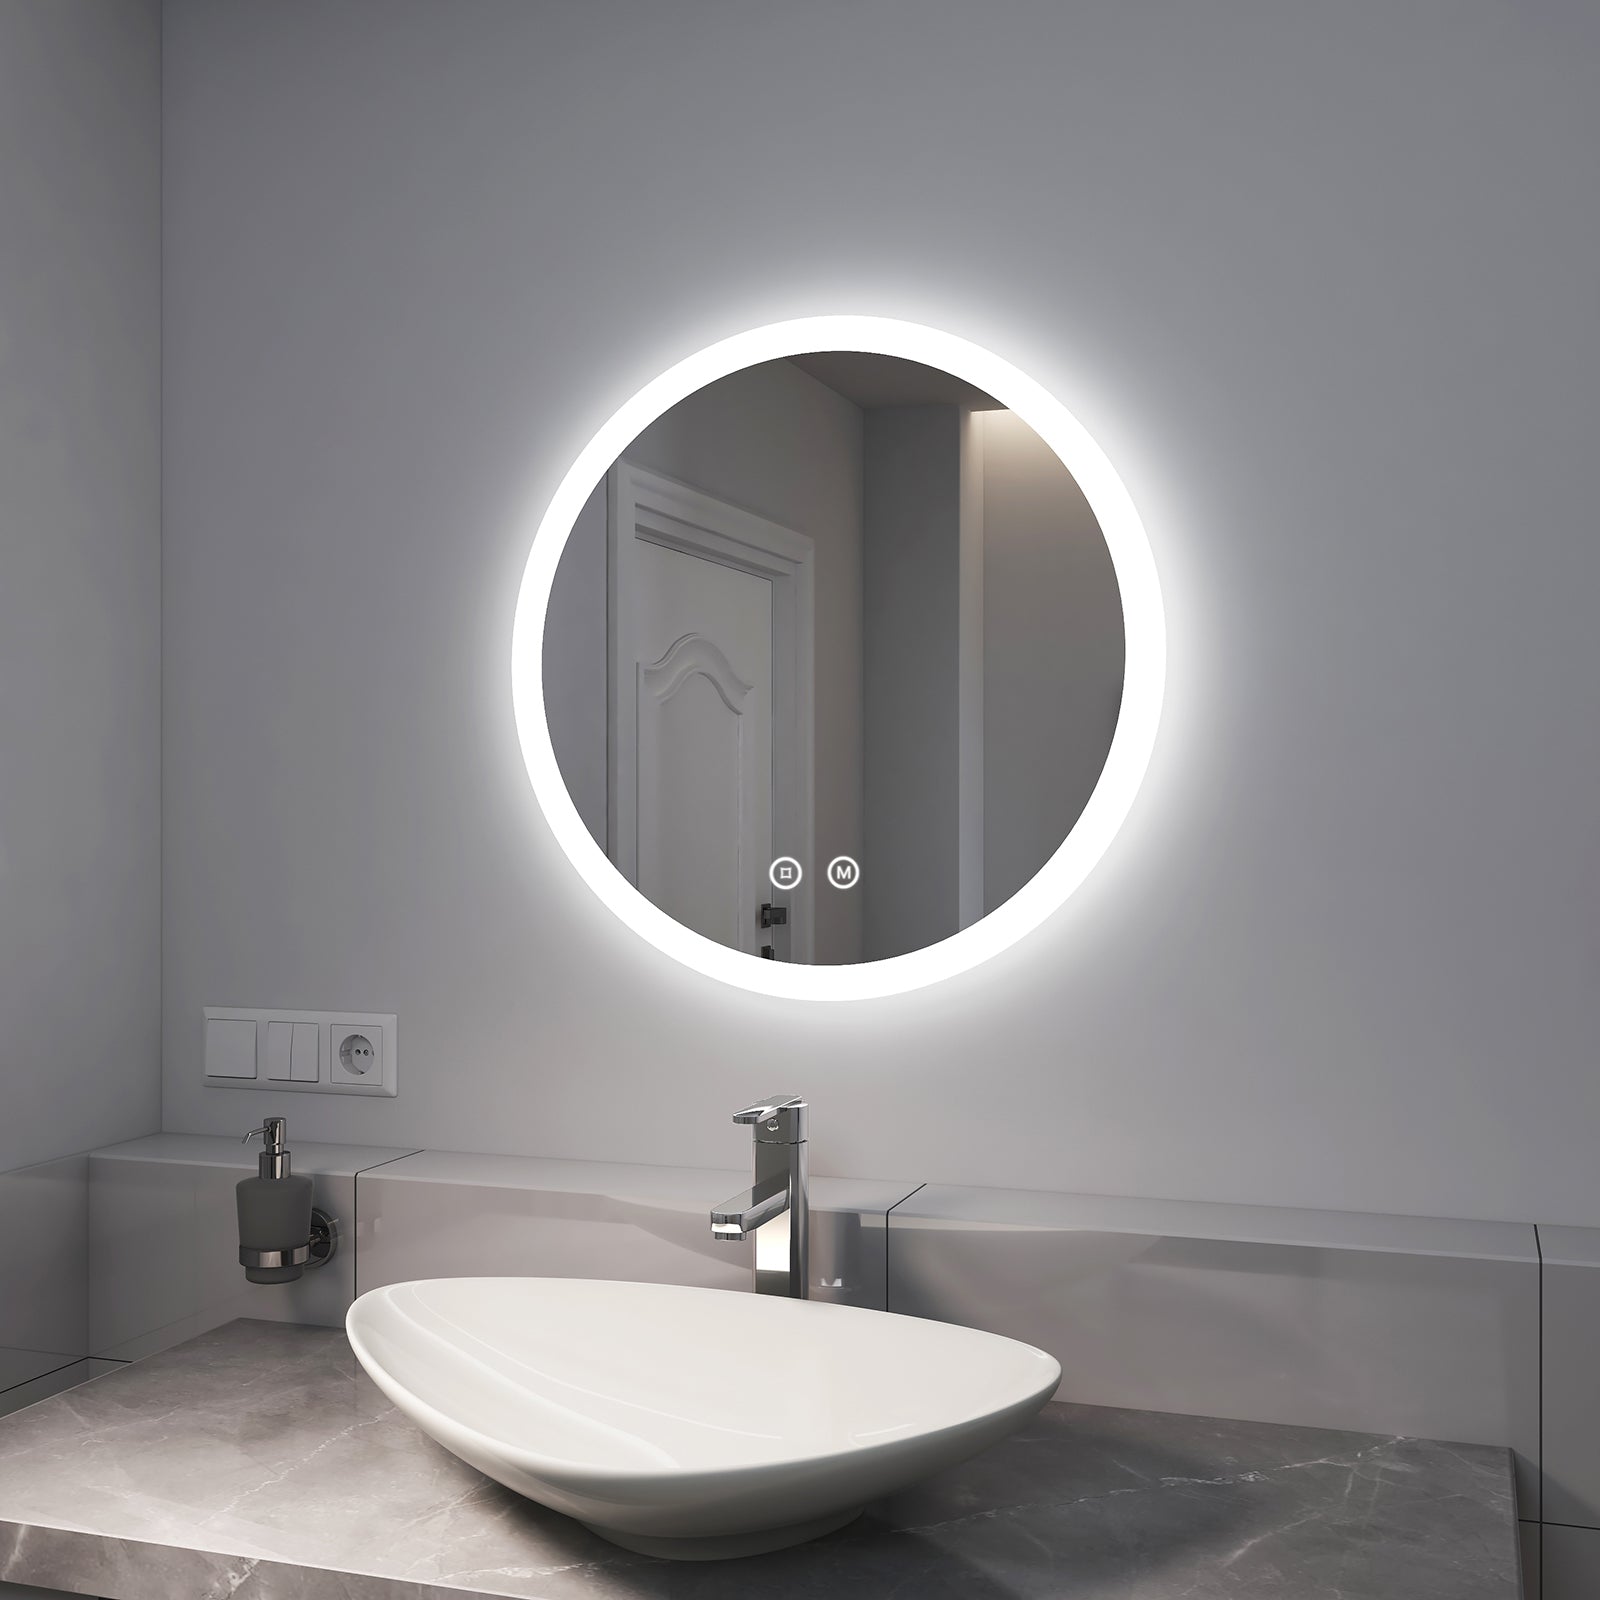 Entspannender Badspiegel mit Beleuchtung: 70 % der Haushalte entscheiden sich für klarere LED-Badspiegel anstelle gewöhnlicher Spiegel. Mit LEDs kannst du morgens den Tag inspirieren und nach einem Arbeitstag ganz du selbst sein.. Die klassischste Badspiegel Größe: 60 cm. 'Die goldene Mitte ist am besten'. Er ist bequemer als 50 cm und energieeffizienter als 70 cm.. Schlaue 3-in-1-Touch: Mit dem SmartTouch 3.0 des EMKE Badezimmerspiegels können Schalter + 3 Lichtfarben + Dimmen mit einem 'Touch' erreicht werden